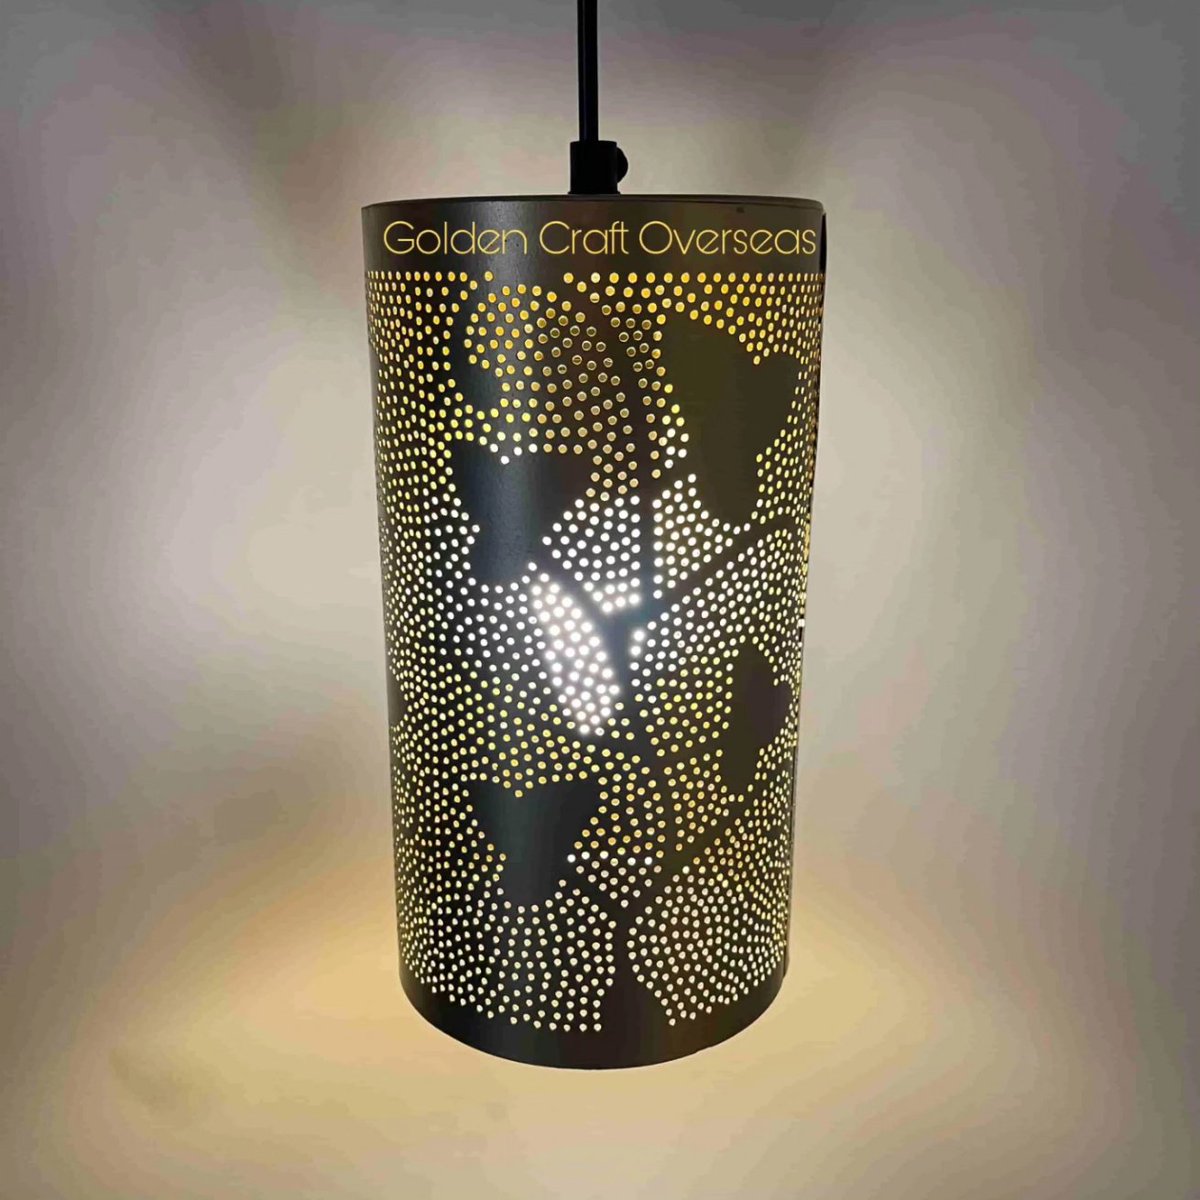 - GCO Hanging Lamp in iron With Powder Coated finish. 

#MoroccanDecor #HangingLamp #CylindricalDesign #ExoticLighting #MoroccanAmbiance #IntricatePatterns #GeometricShapes #ArtisanCrafted #ElegantDecor #BohoChic #CulturalInspiration #HandmadeBeauty #MoorishStyle